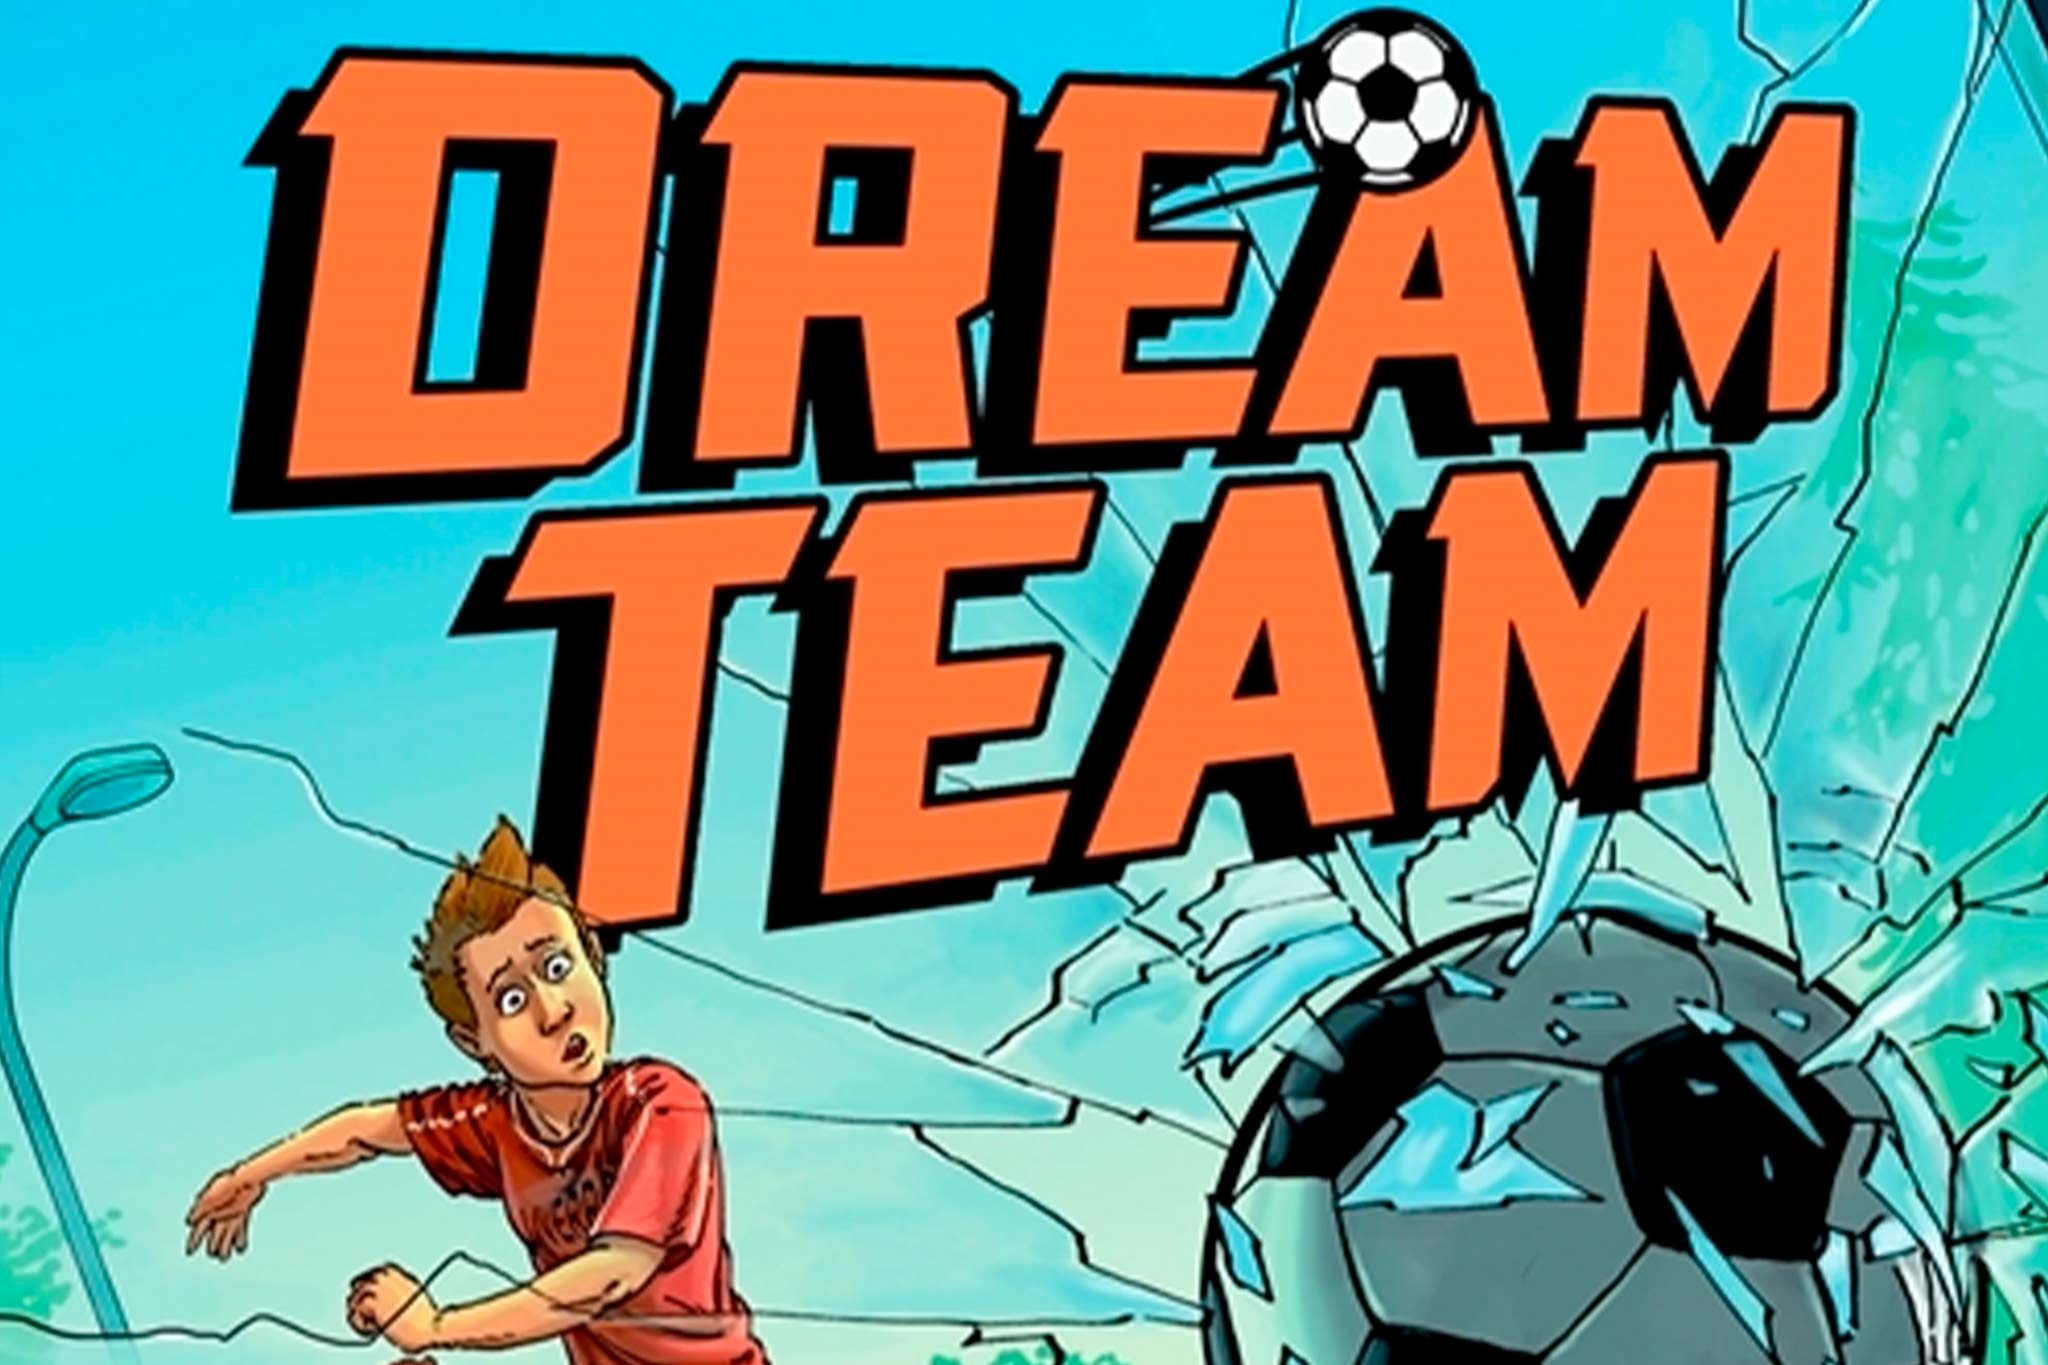 Dreamteam link til serie